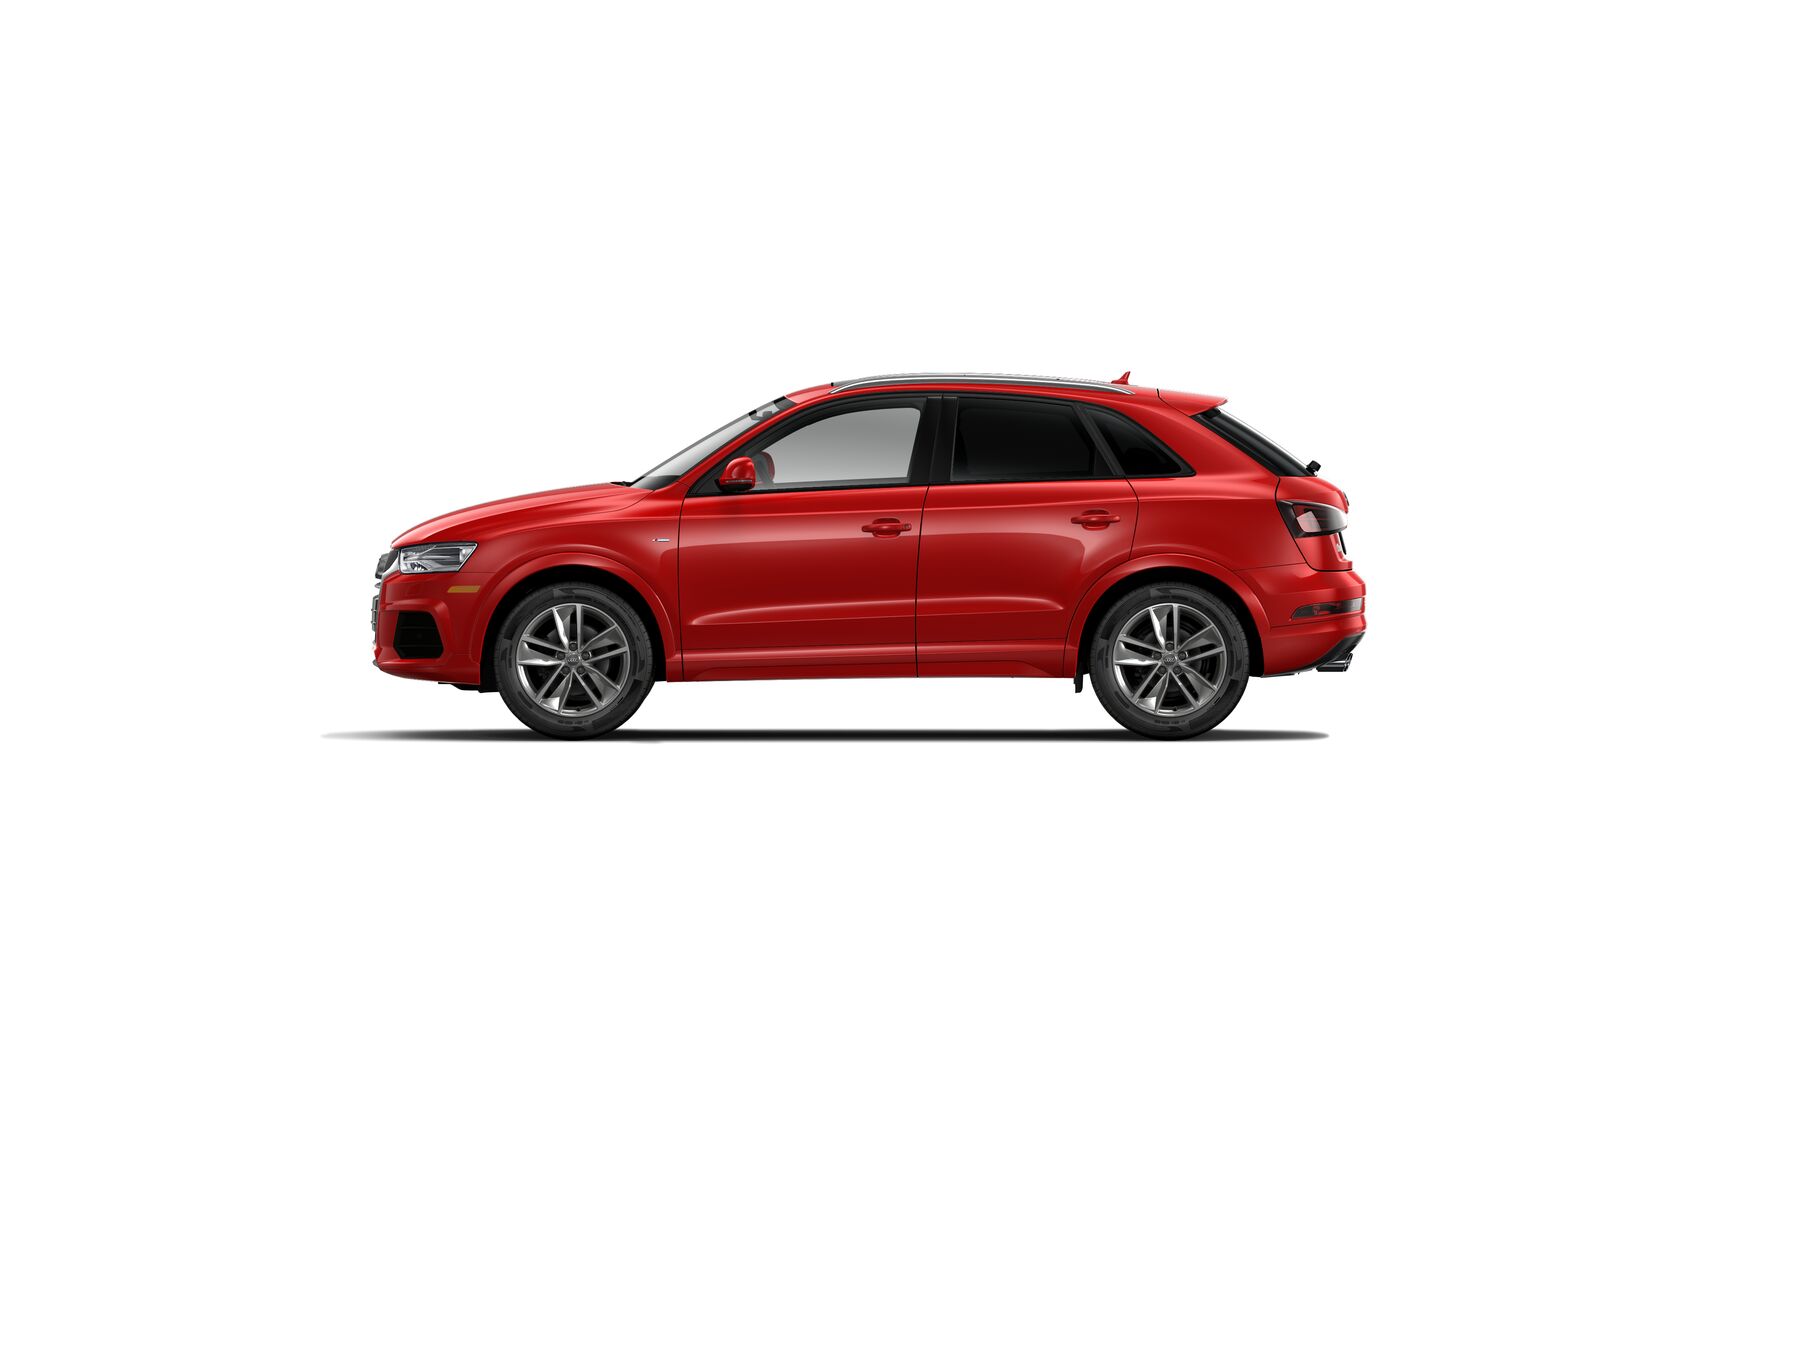 Audi Q3 Premium Plus side view